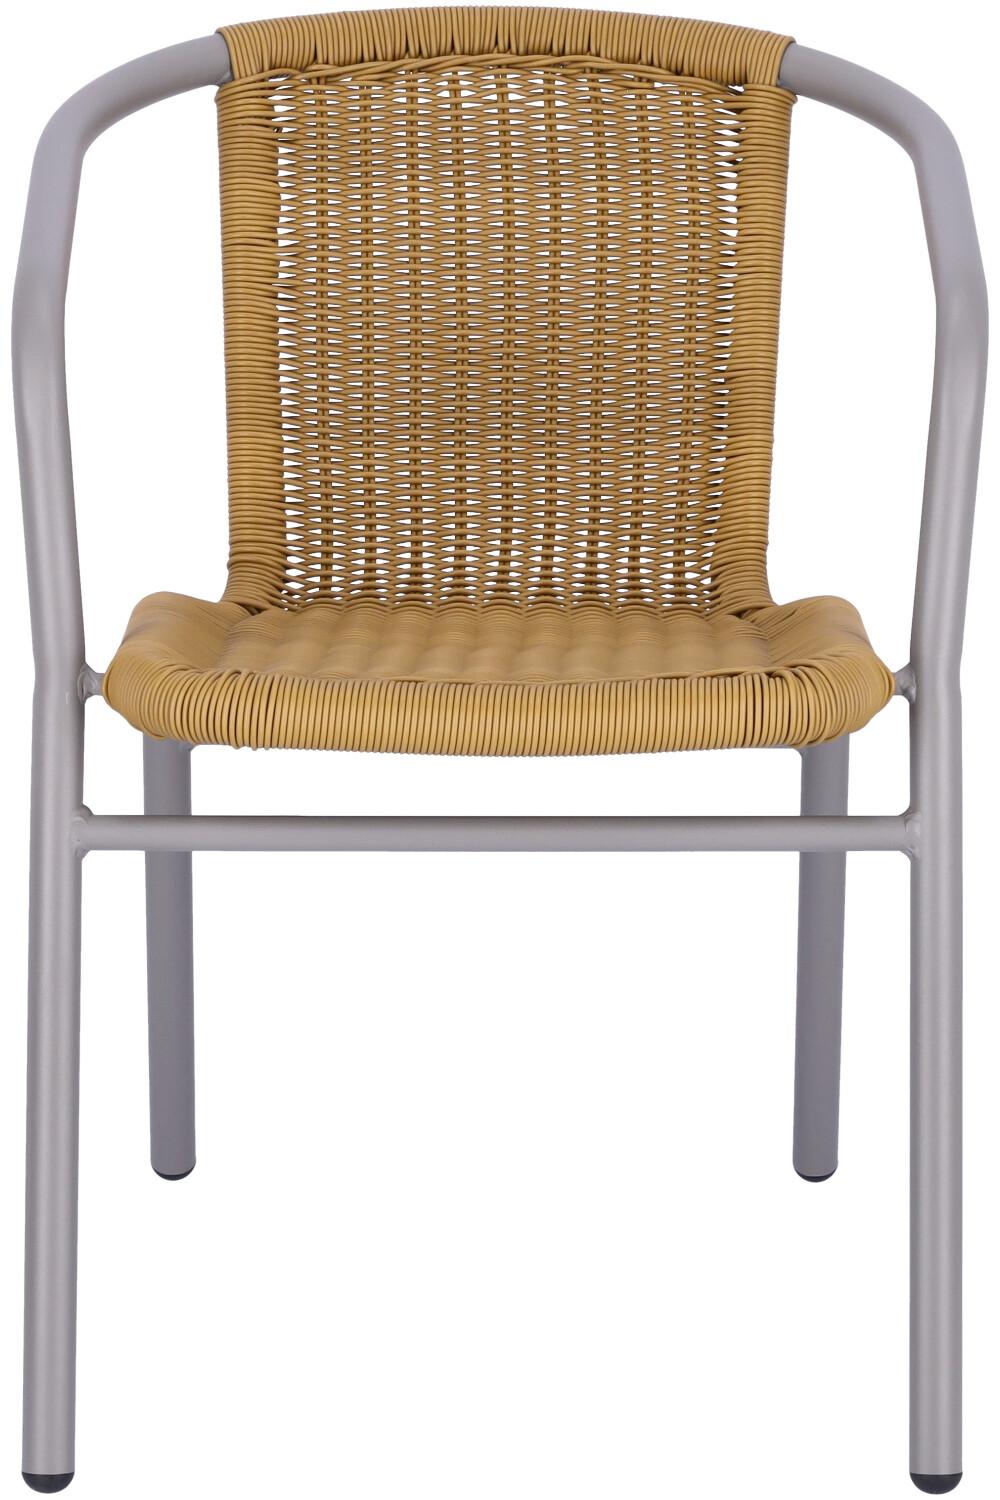 Abbildung arm chair Enriko Vorderansicht